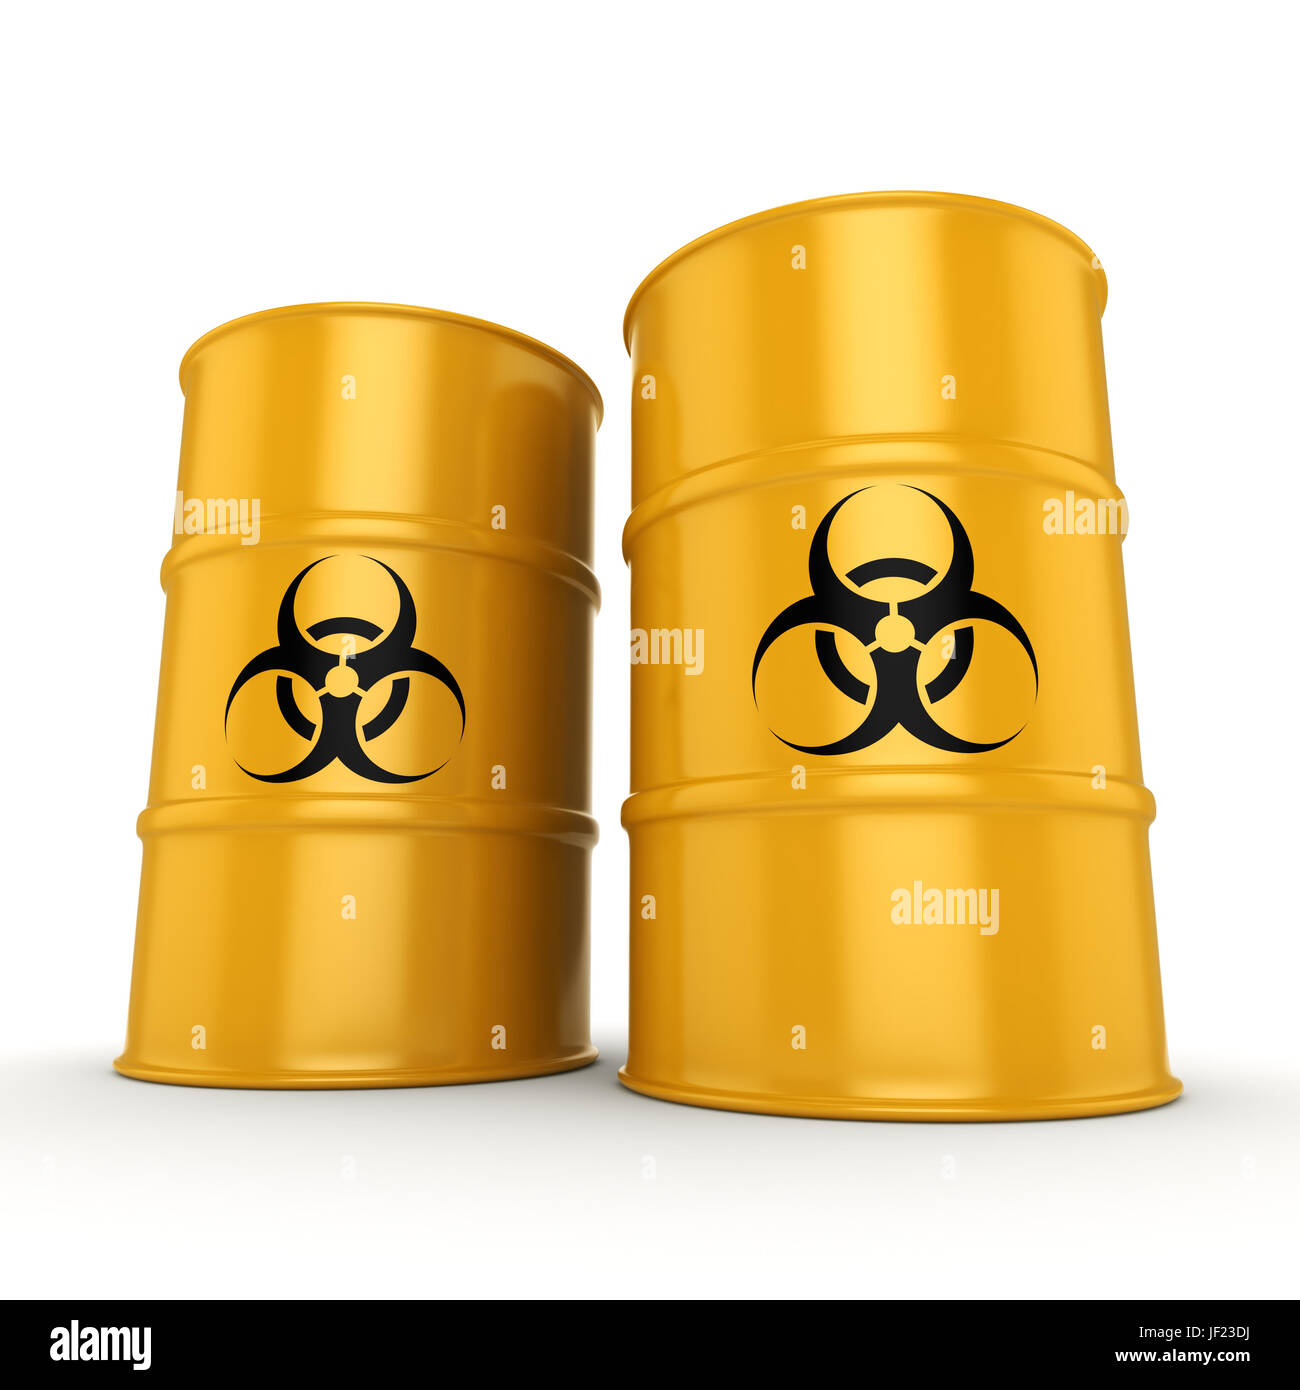 3D rendering biohazard barrels Stock Photo